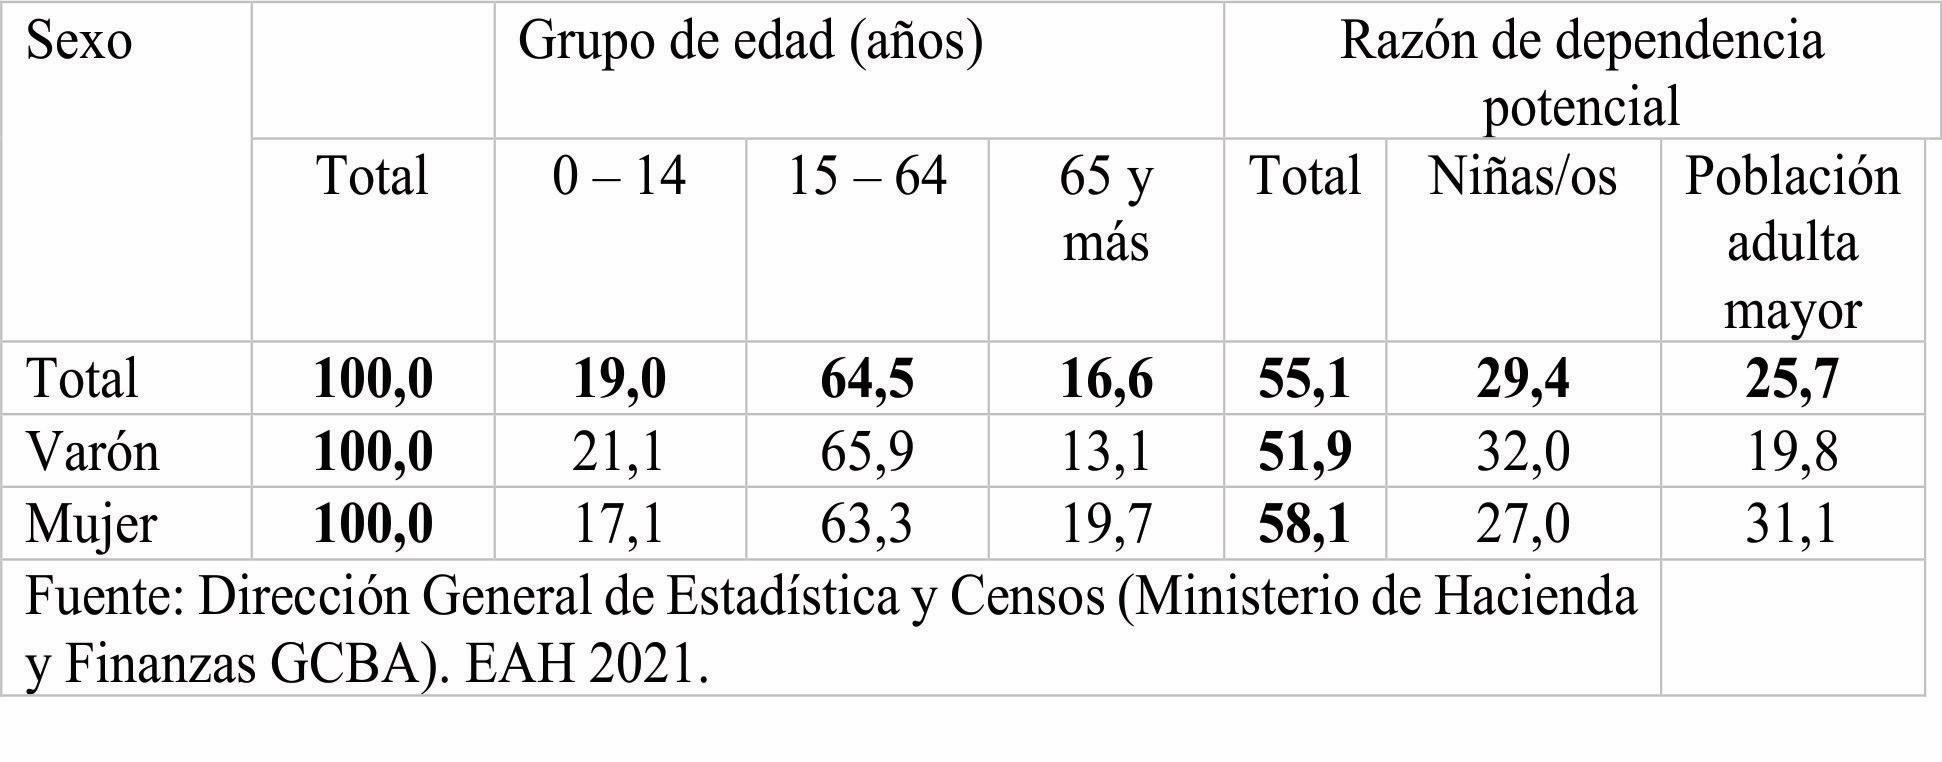 Distribución porcentual de la población por grandes grupos de edad y
razón de dependencia potencial total, de niñas/os y población adulta mayor
según sexo. Ciudad de Buenos Aires. Año 2021